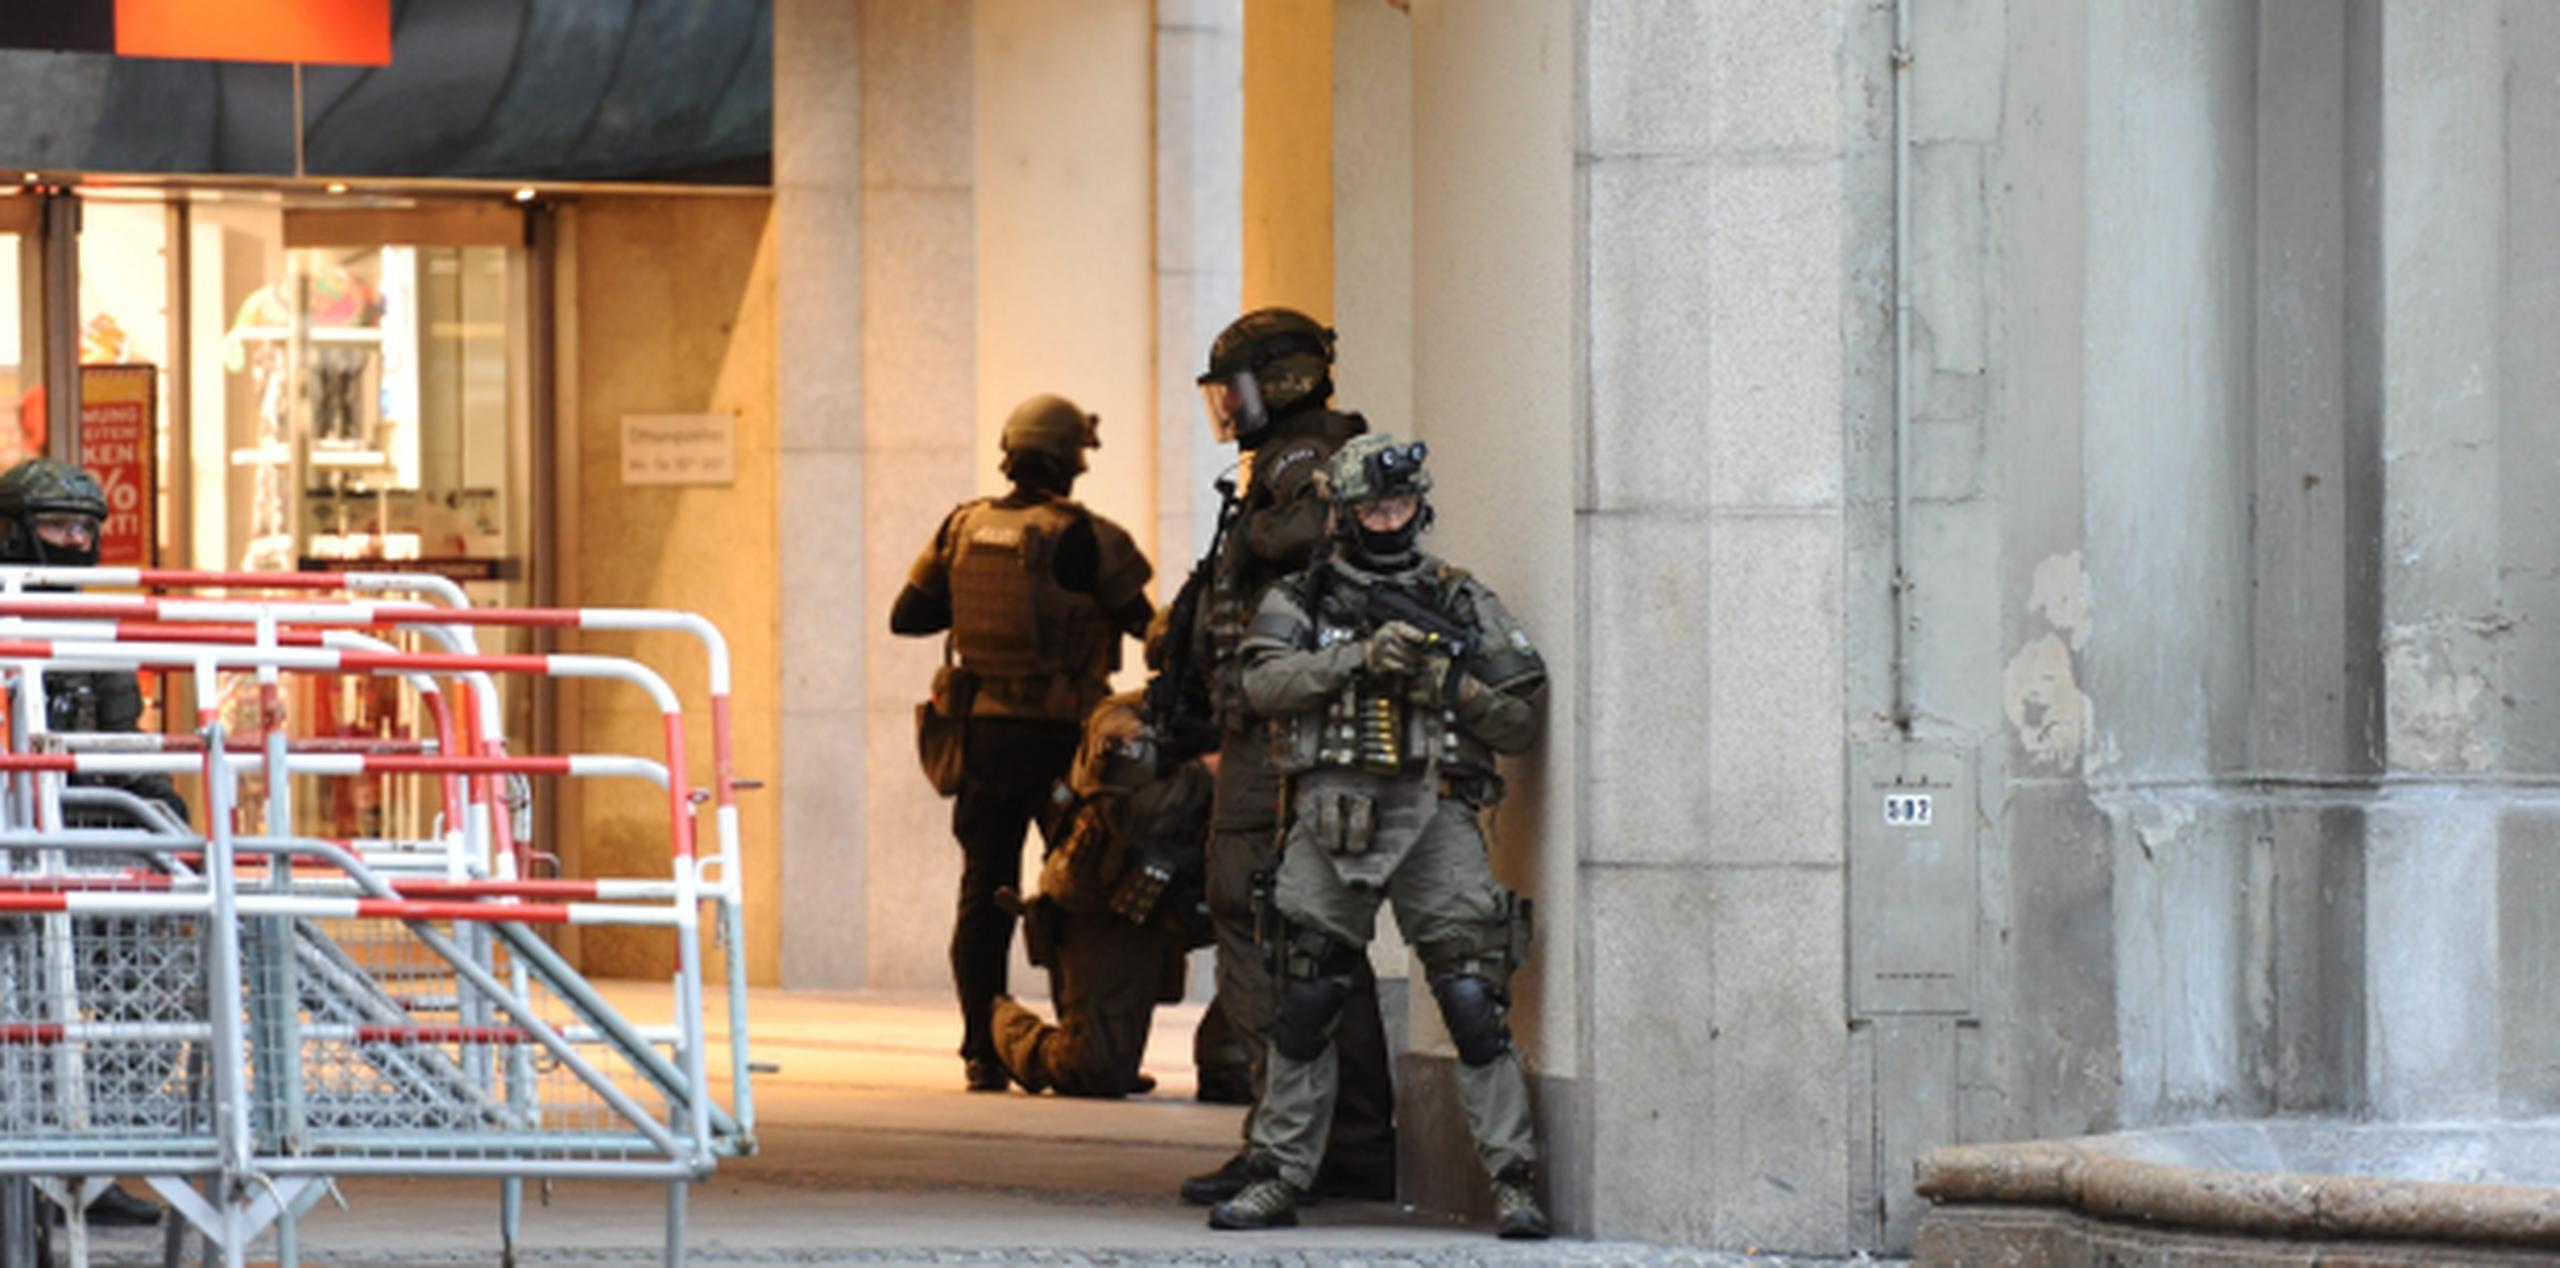 Policías de las Fuerzas Especiales aseguran el exterior del hotel Stachus tras el tiroteo registrado. (Agencia EFE)